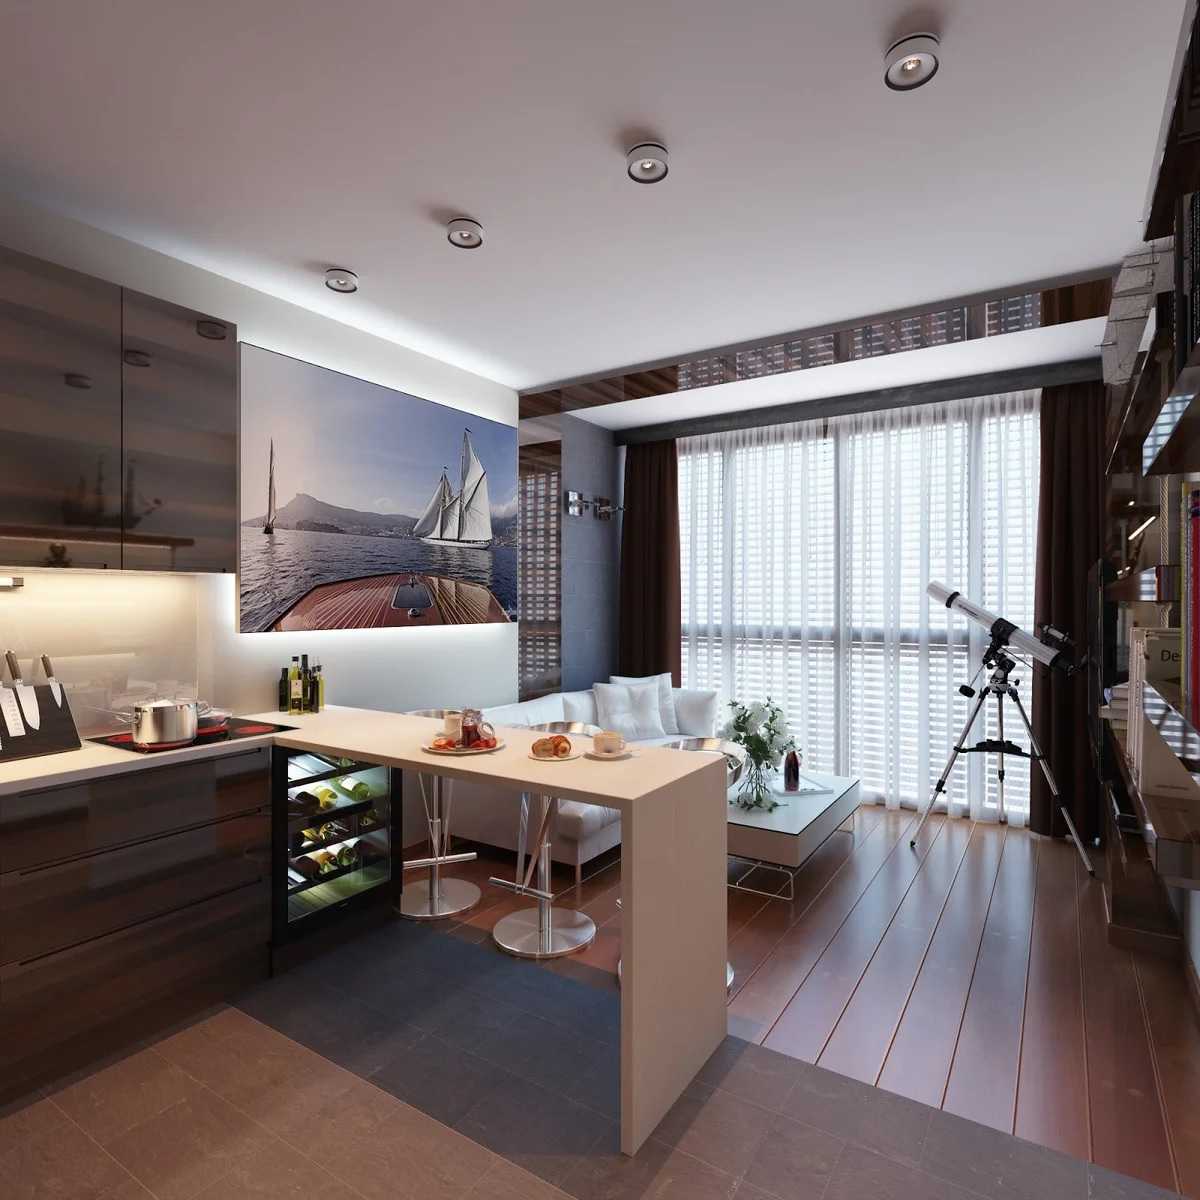 Европланировка двухкомнатной квартиры (45 фото): что такое евродвушка? варианты планировки метража 32, 39, 45 кв. м